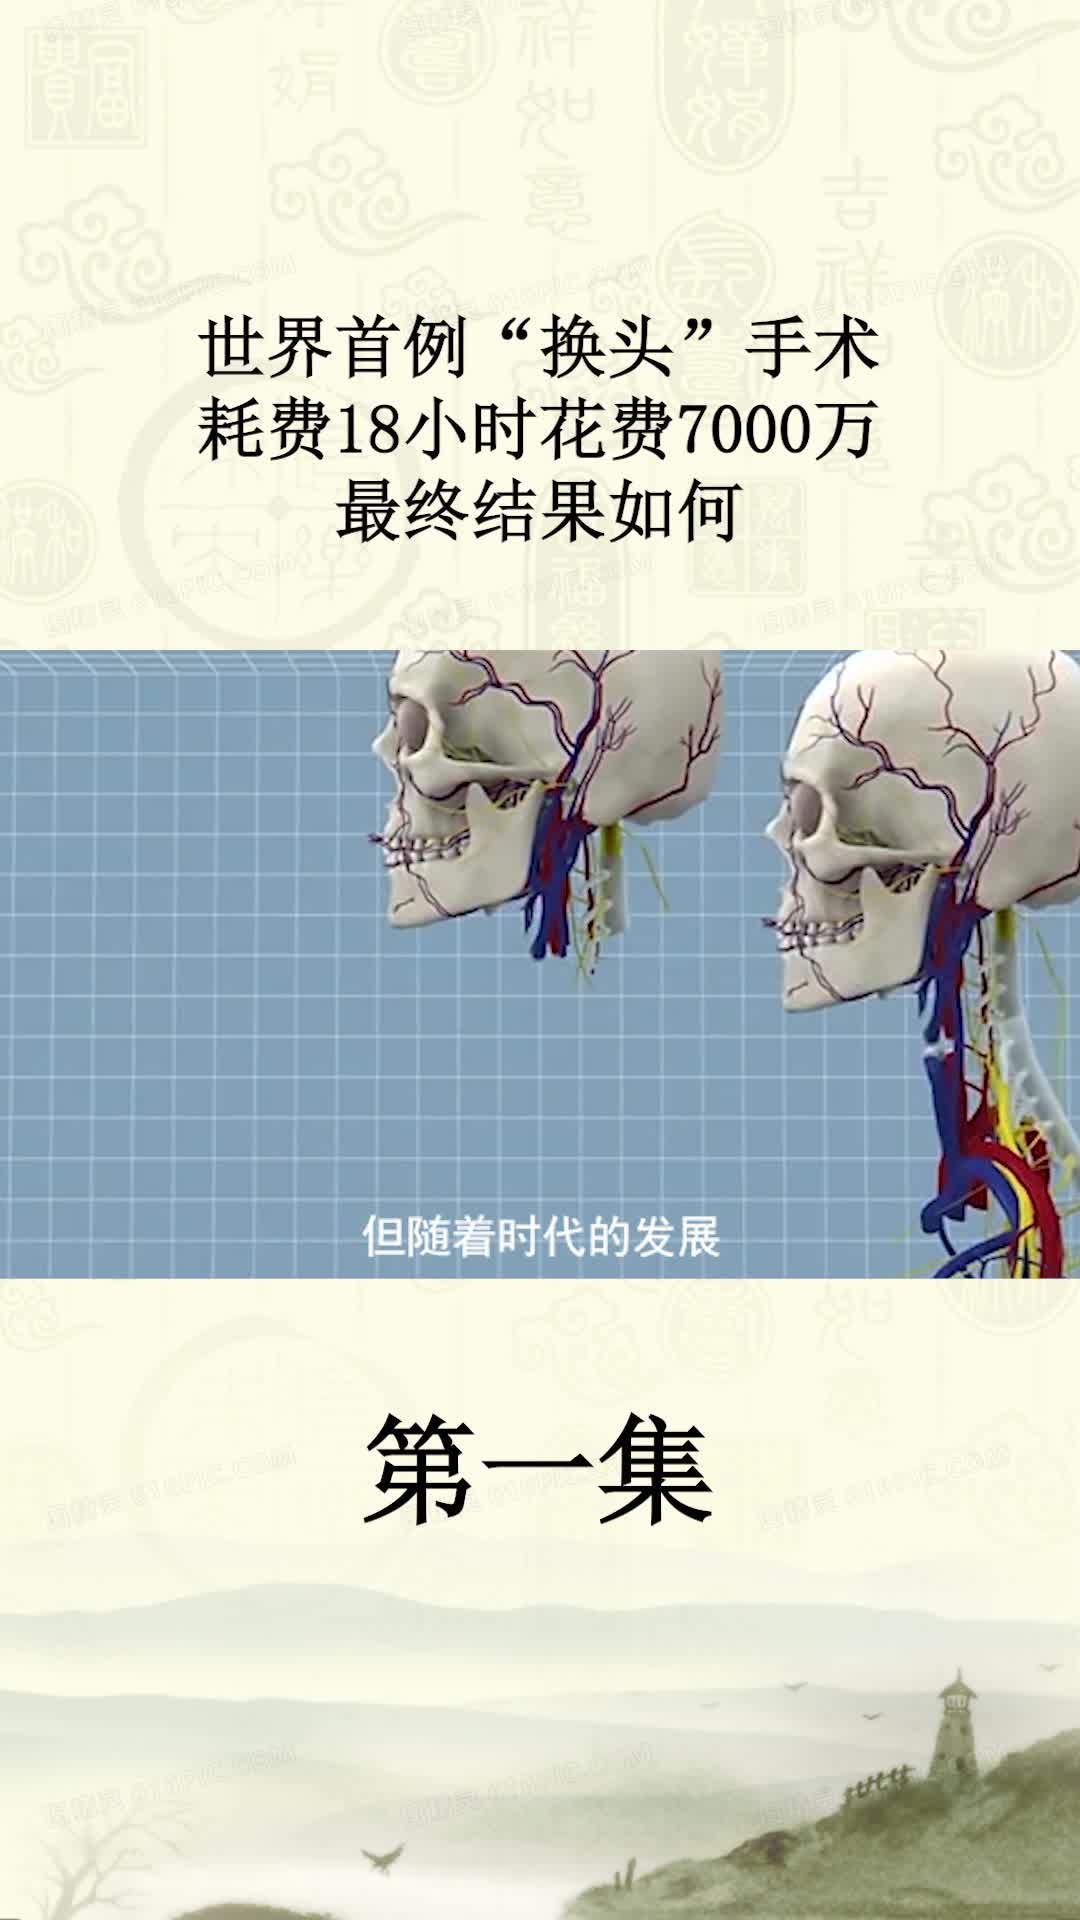 中国医生证实 人体换头手术成功 - Capital Asia Magazine 《资本》杂志